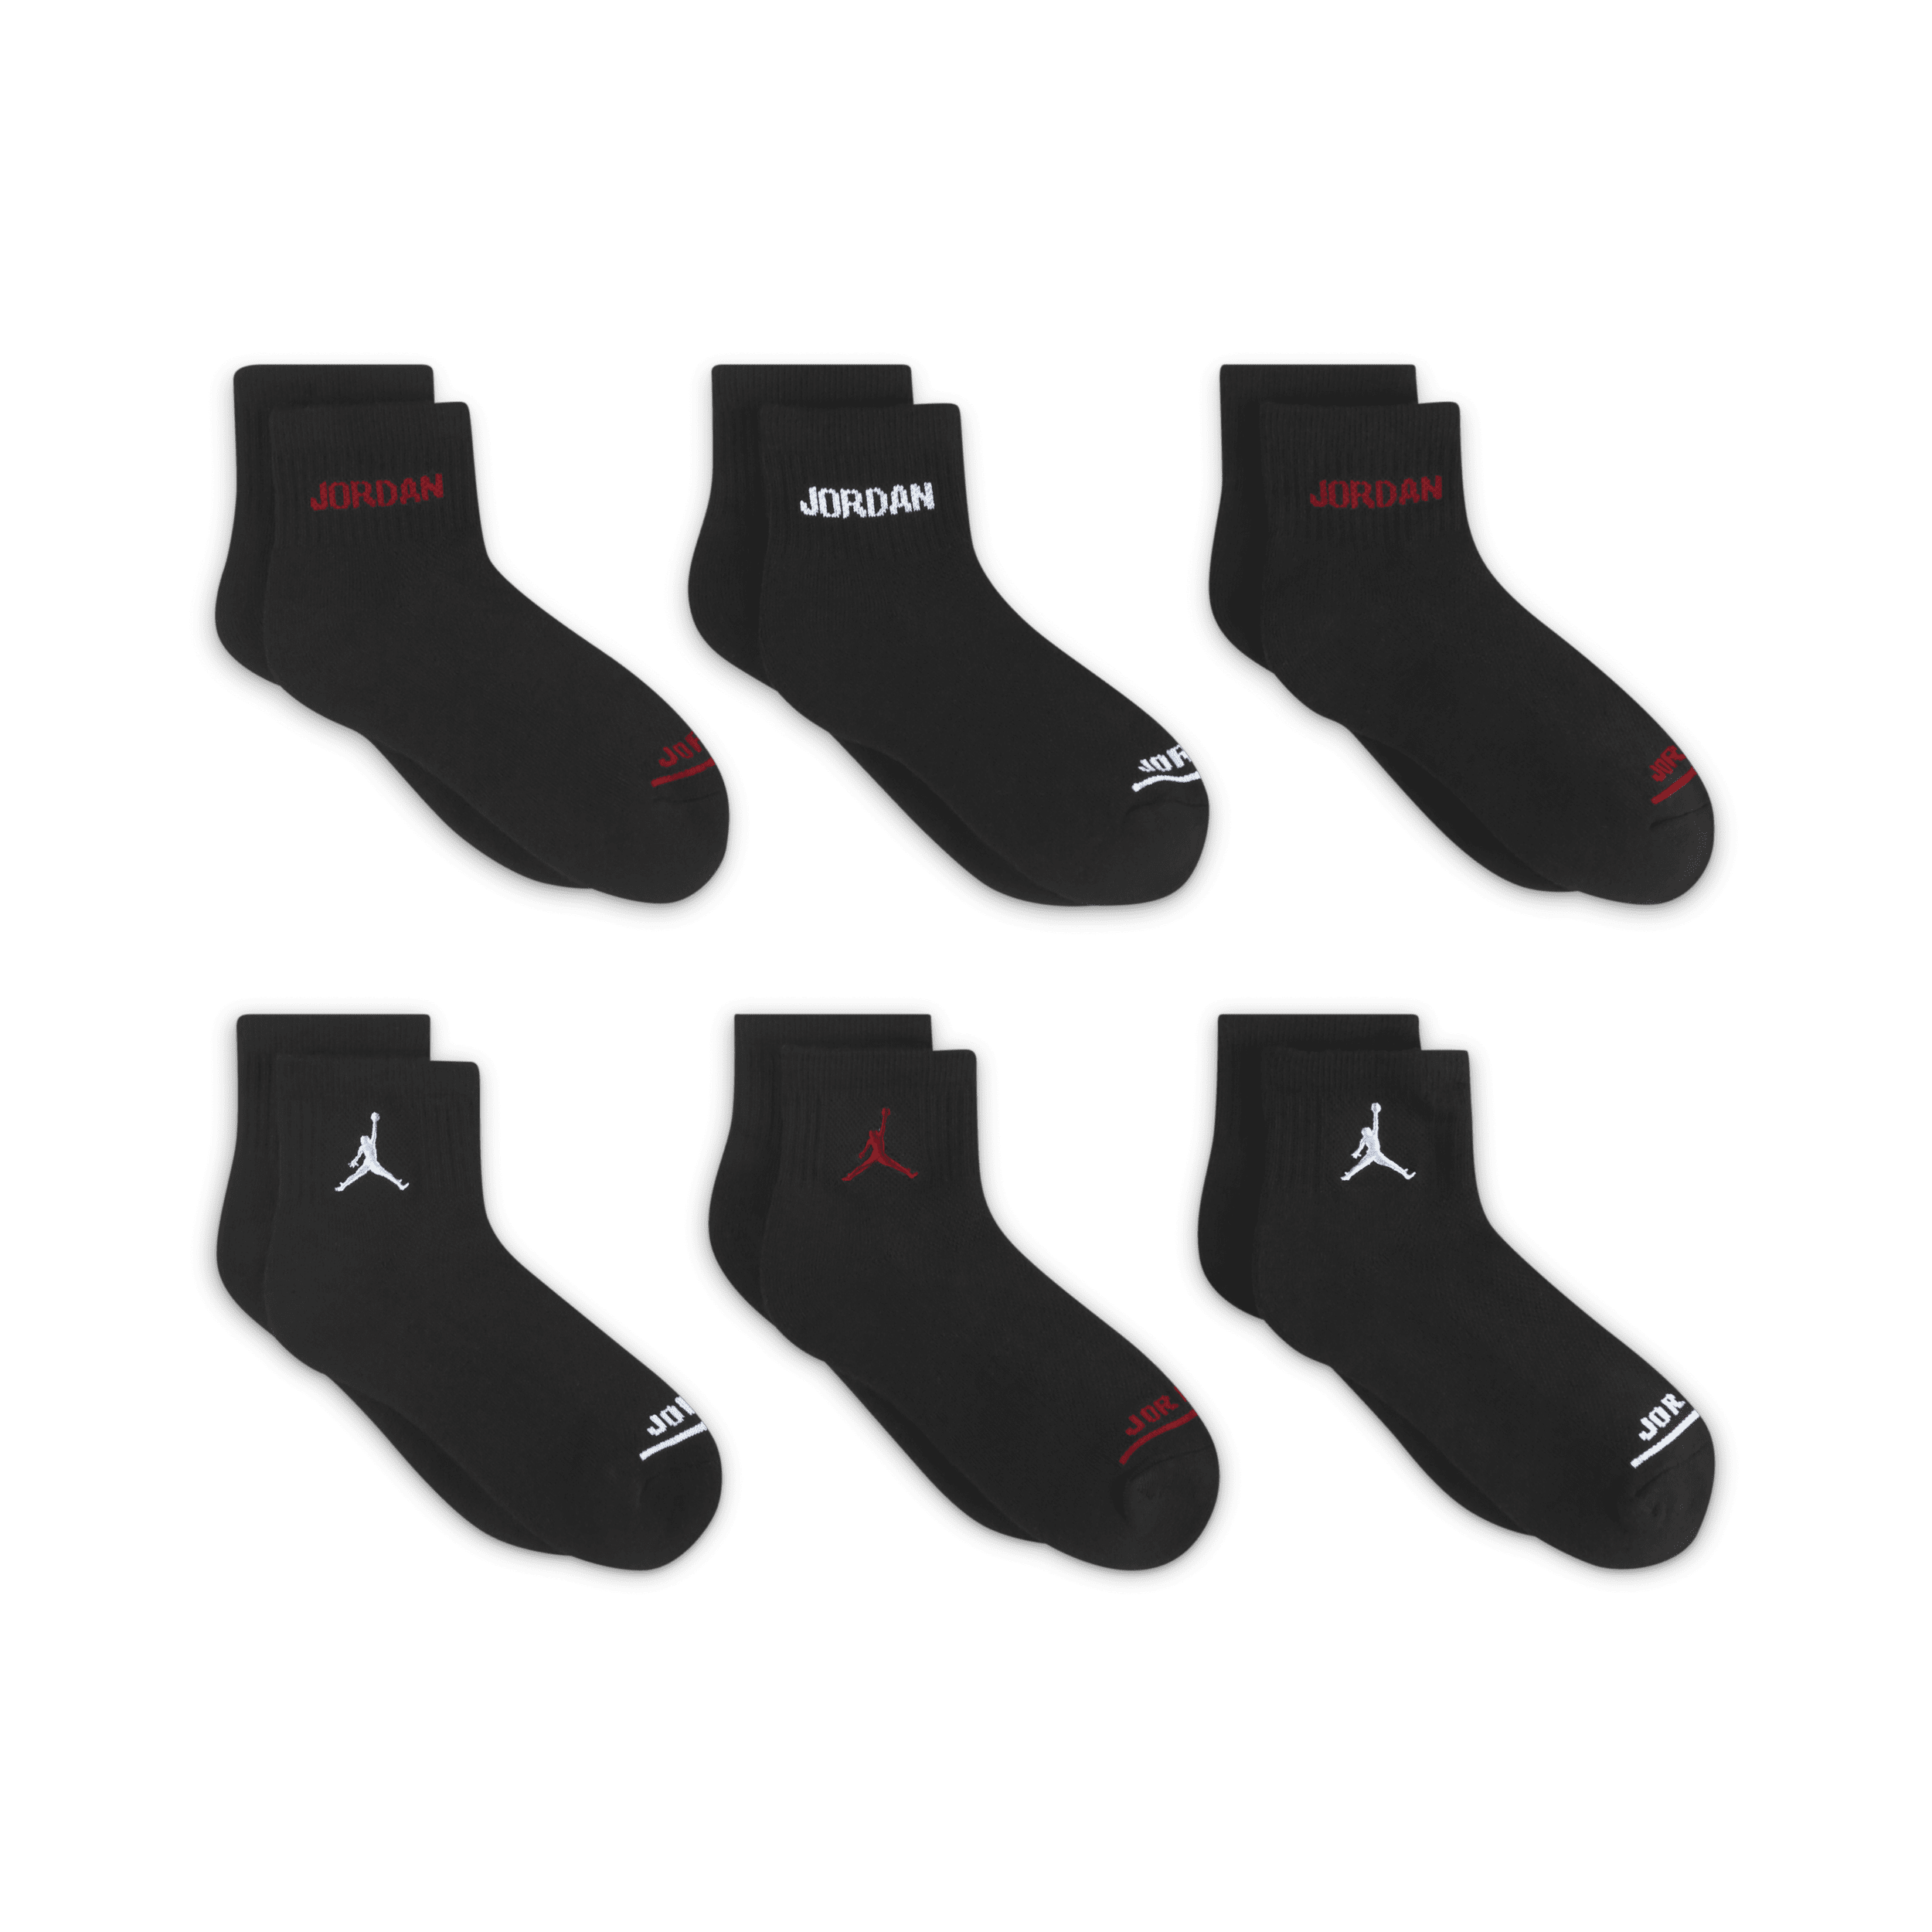 Jordan Enkelsokken voor kleuters (6 paar) Zwart